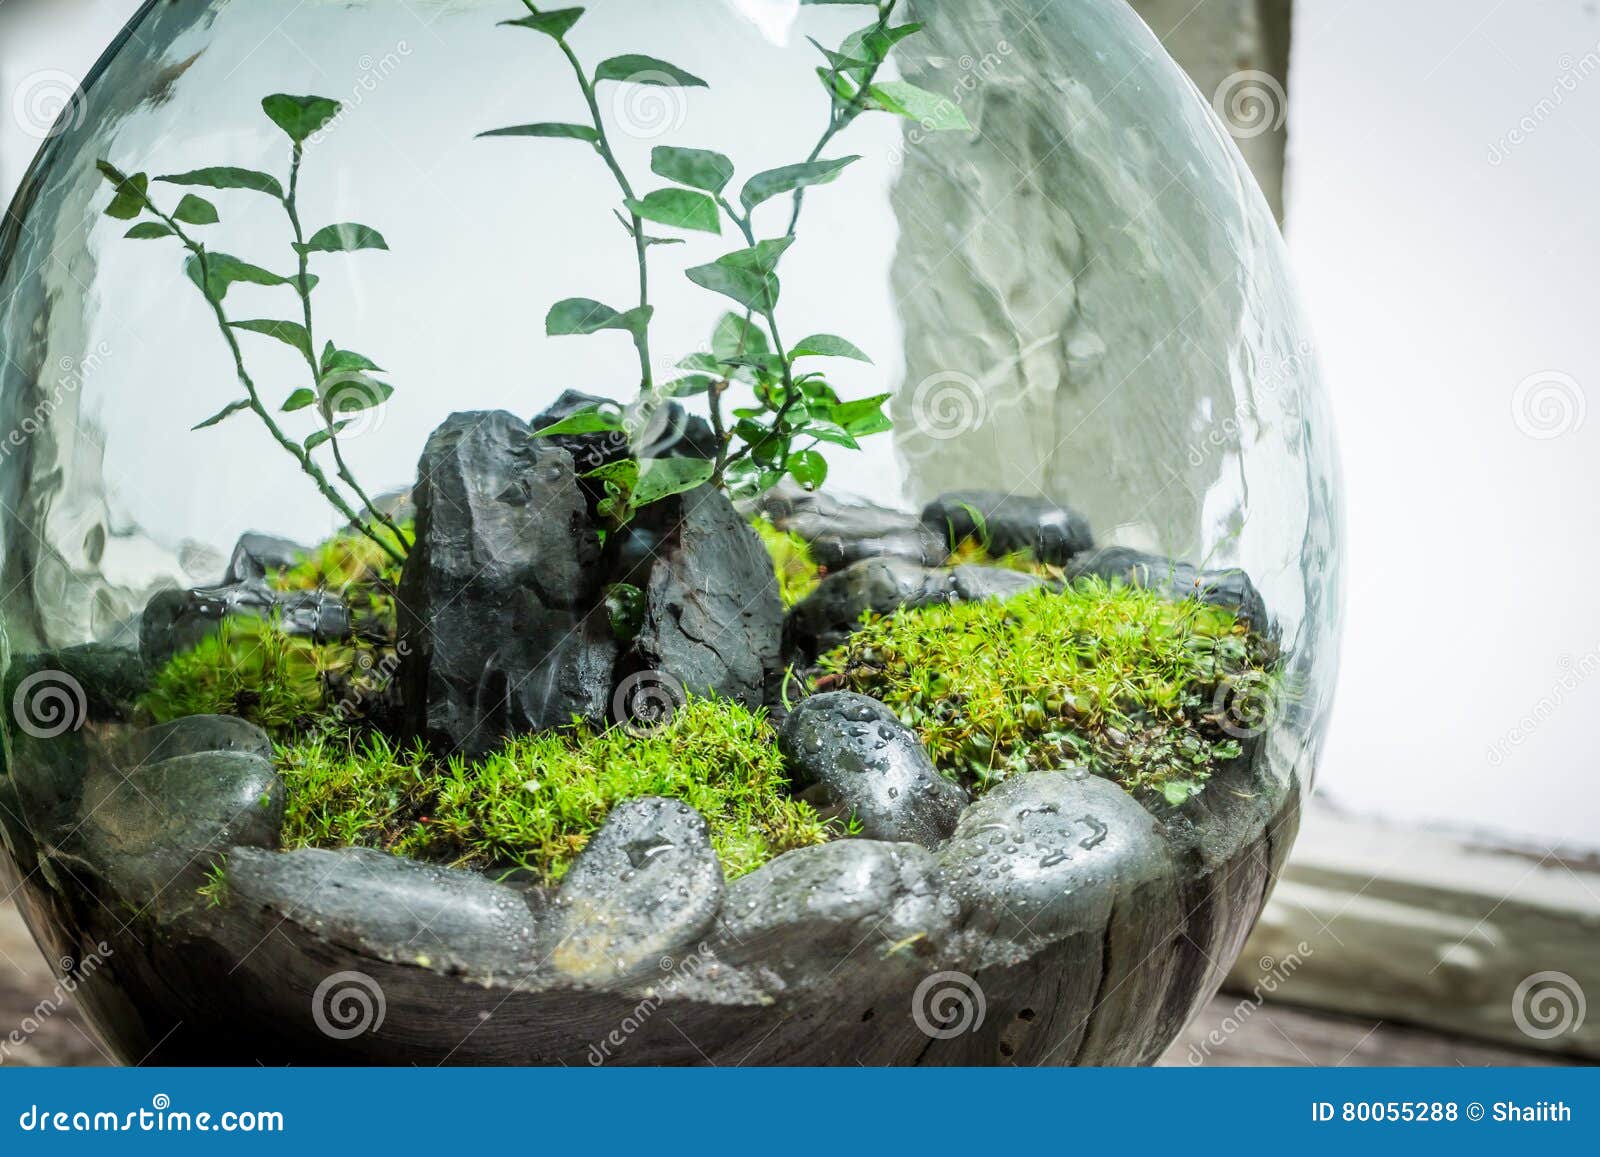 Erstaunliche Lebende Pflanzen In Einem Glas Speichern Das Erdkonzept Stockfoto Bild Von Pflanzen Erdkonzept